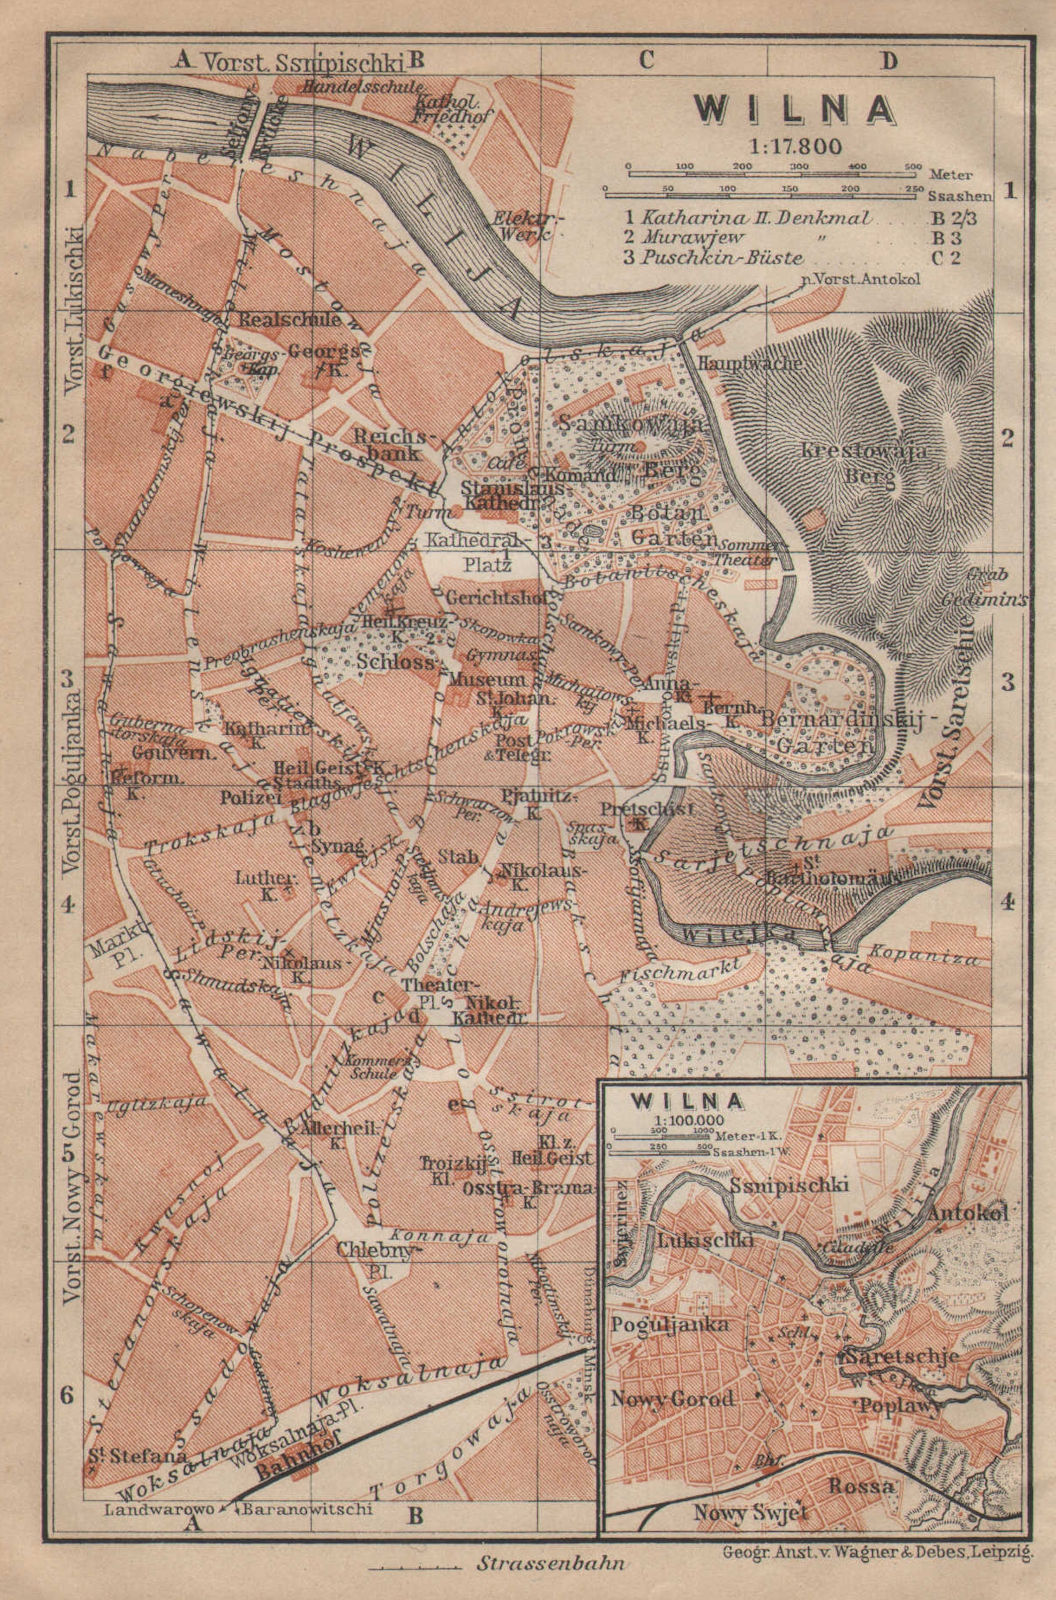 Vilnius town/city plan miestas miesto zemelapis planas. Wilna Lithuania 1912 map